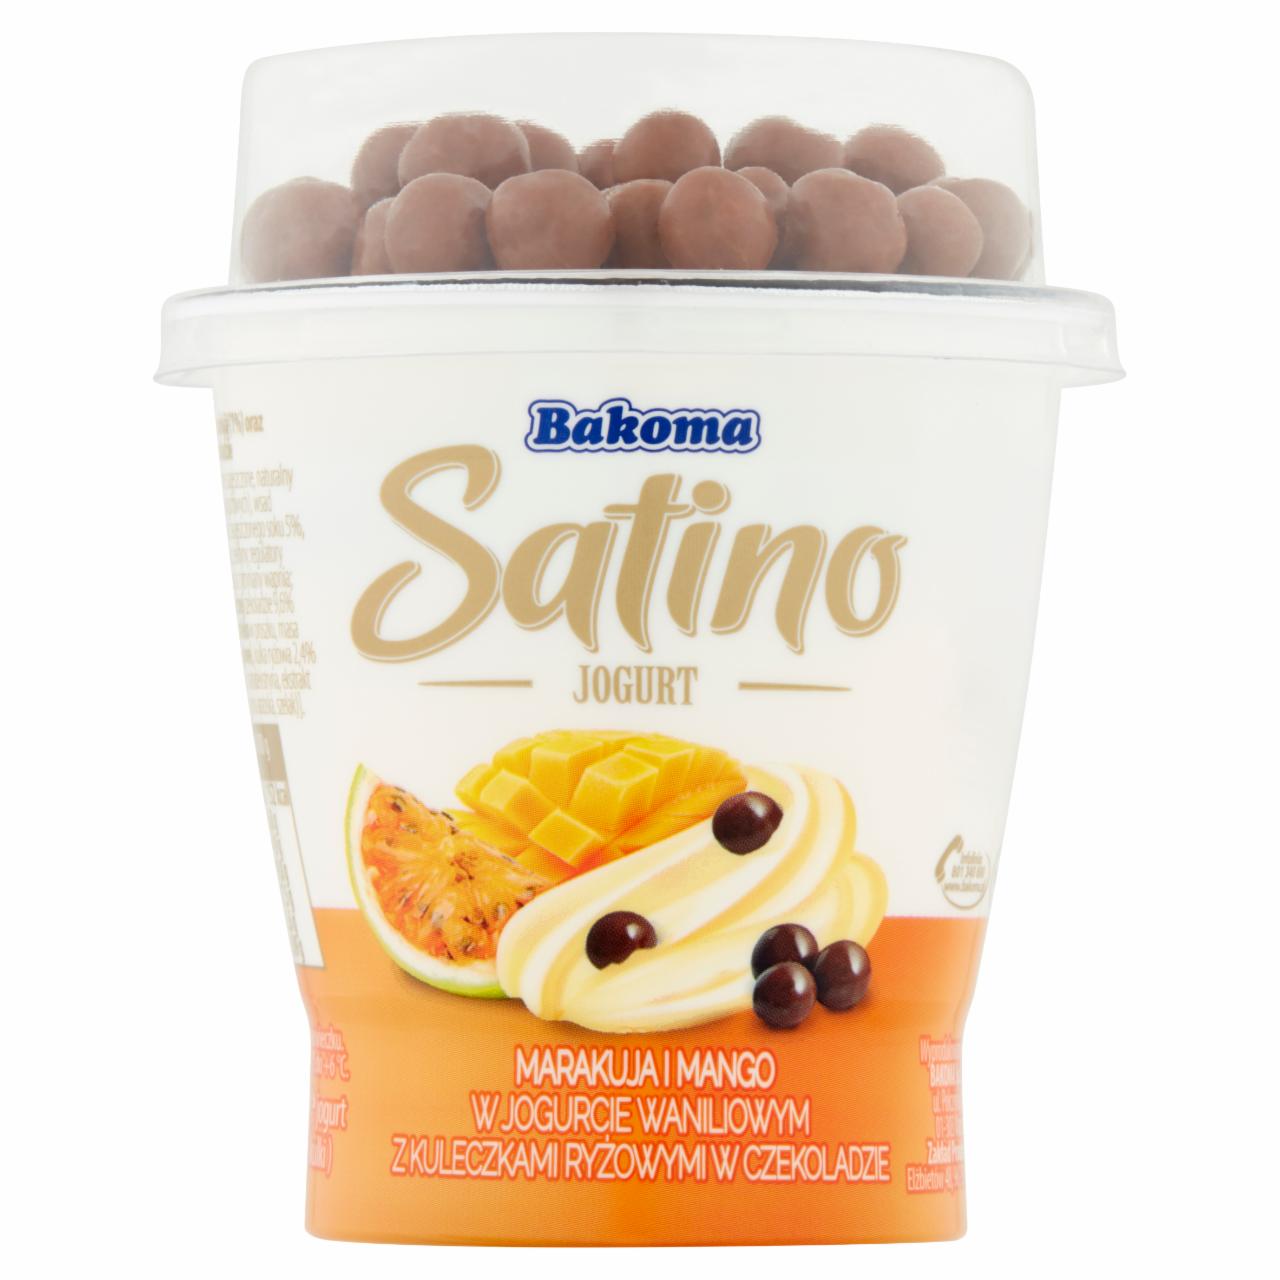 Zdjęcia - Bakoma Satino Jogurt kremowy waniliowy z mango i marakują z kulkami ryżowymi w czekoladzie 155 g